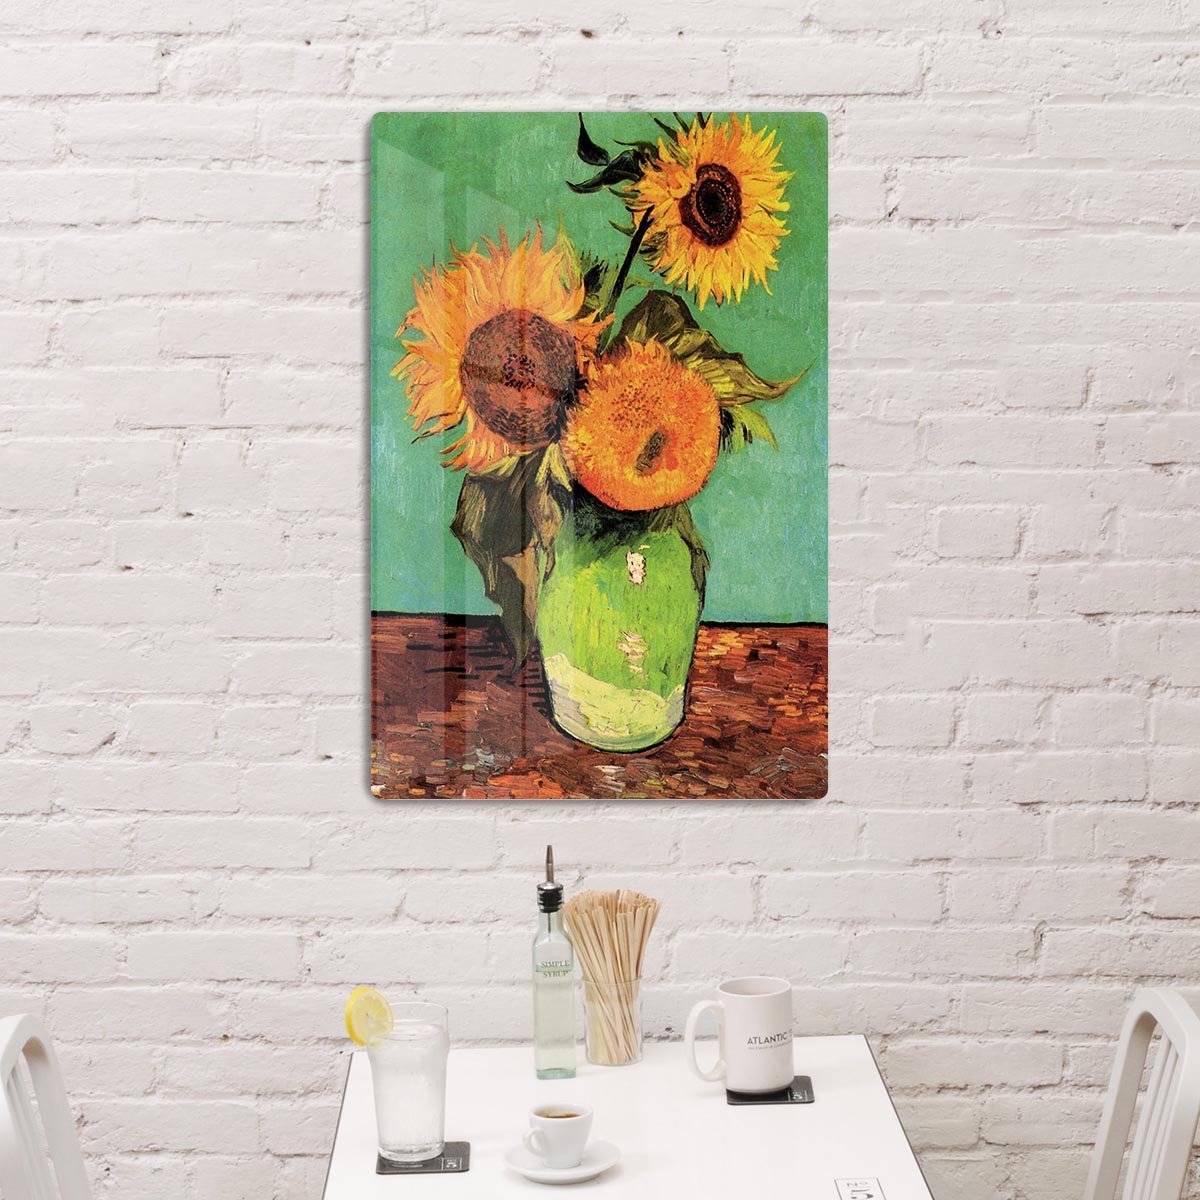 Three Sunflowers in a Vase by Van Gogh HD Metal Print